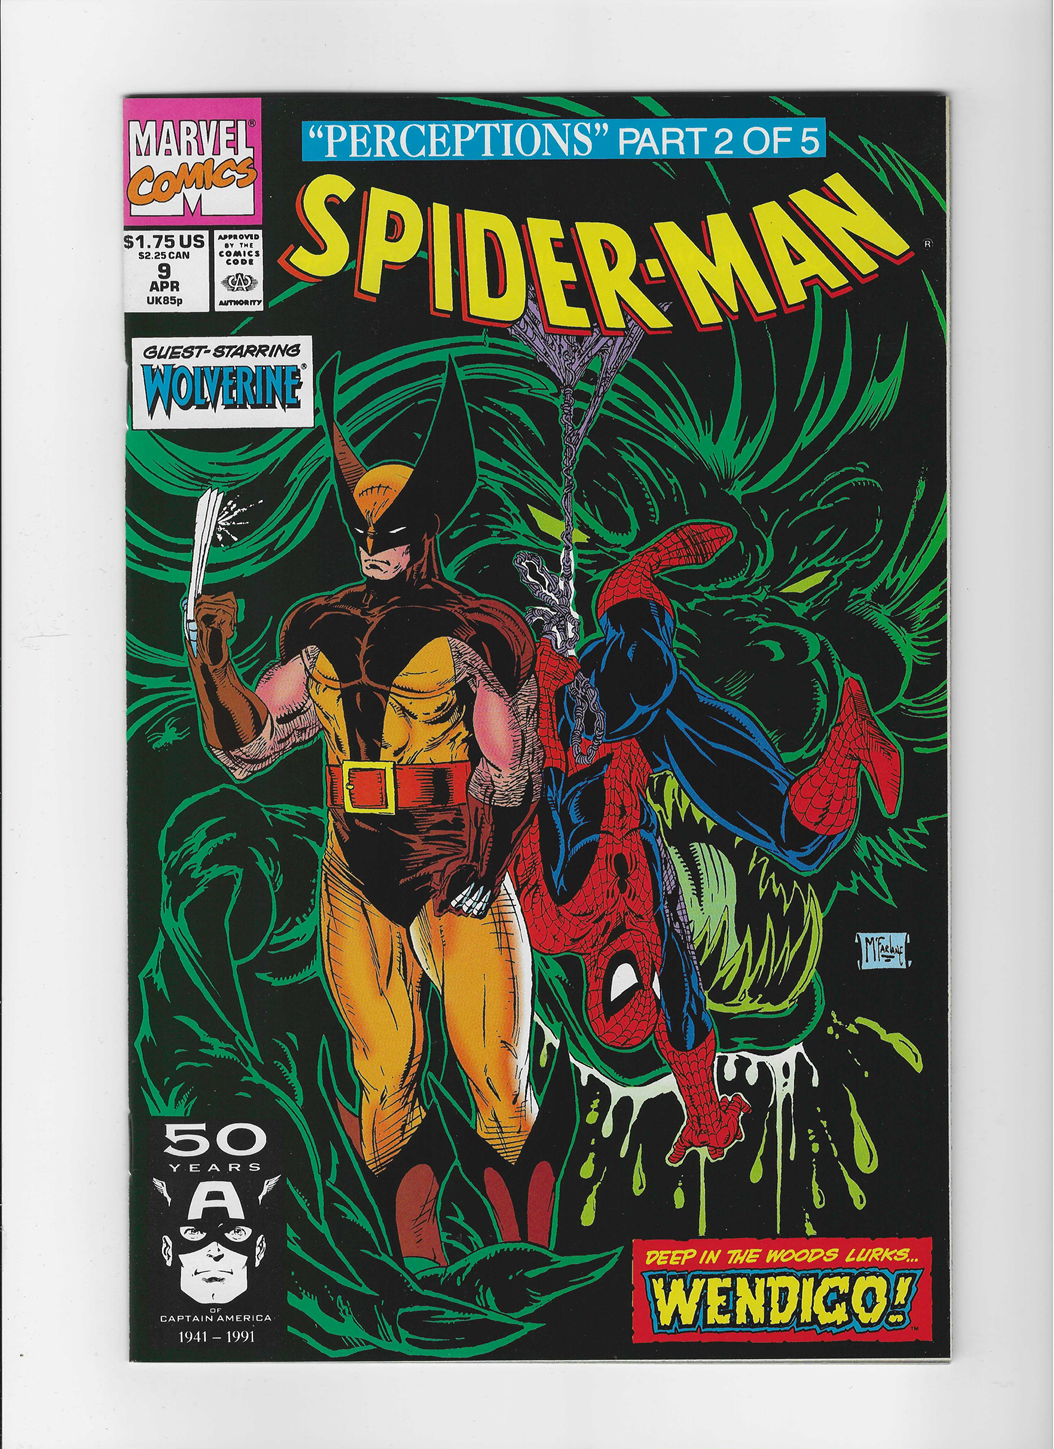 Spider-Man, Vol. 1 #9